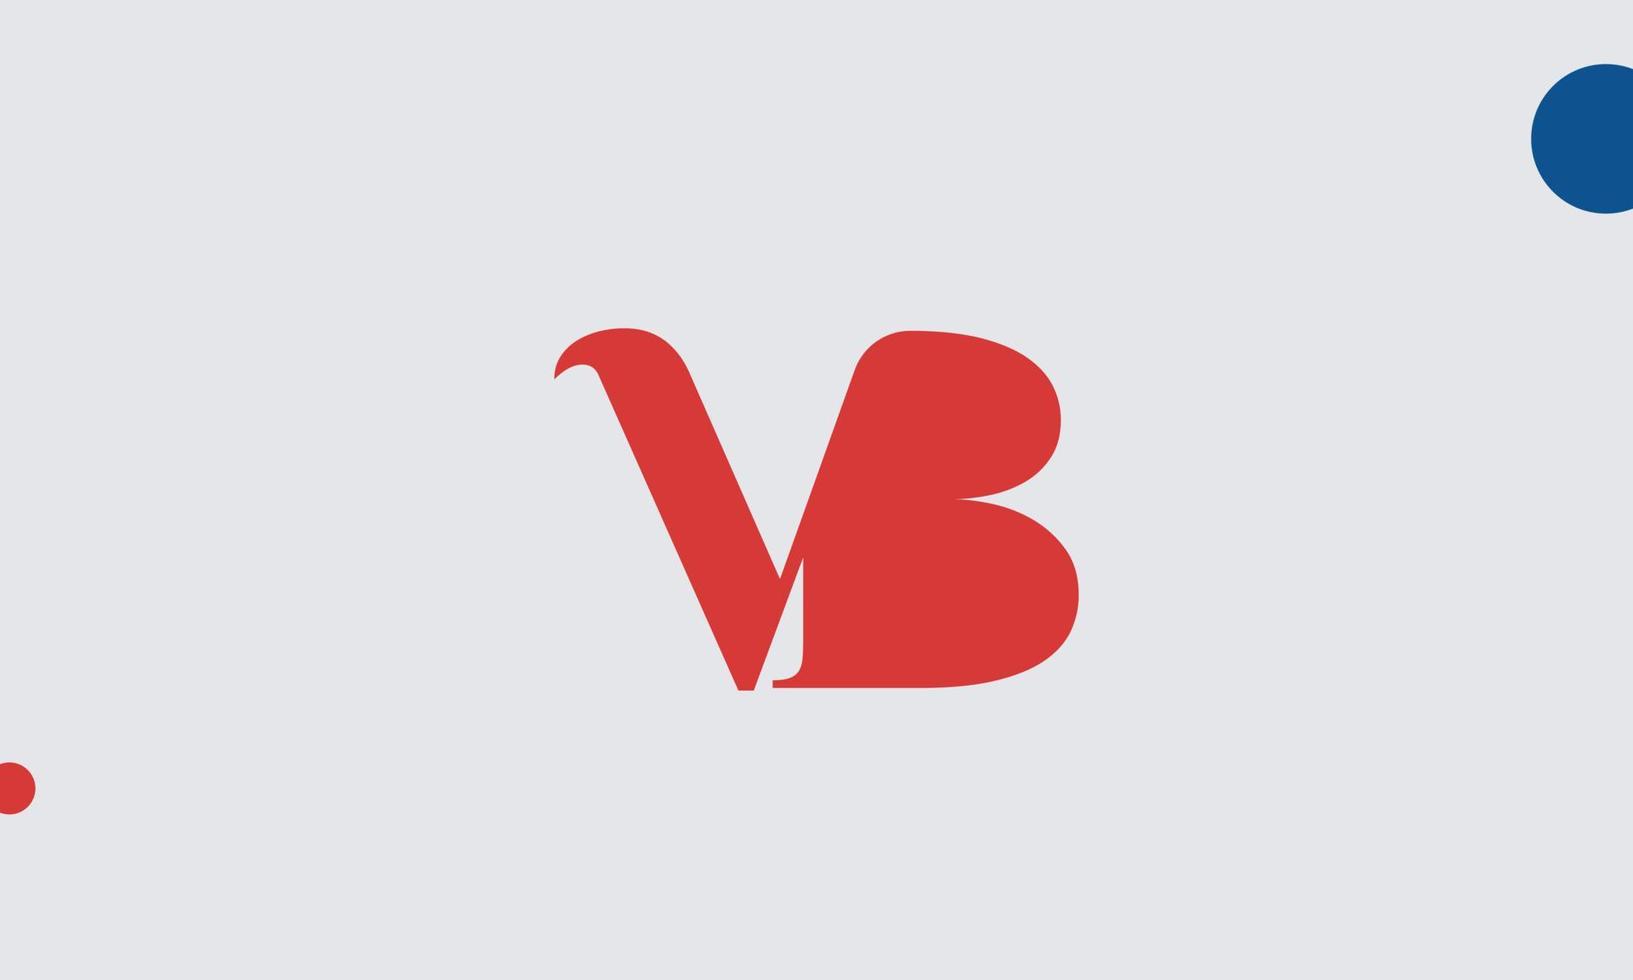 alfabeto lettere iniziali monogramma logo vb, bv, v e b vettore